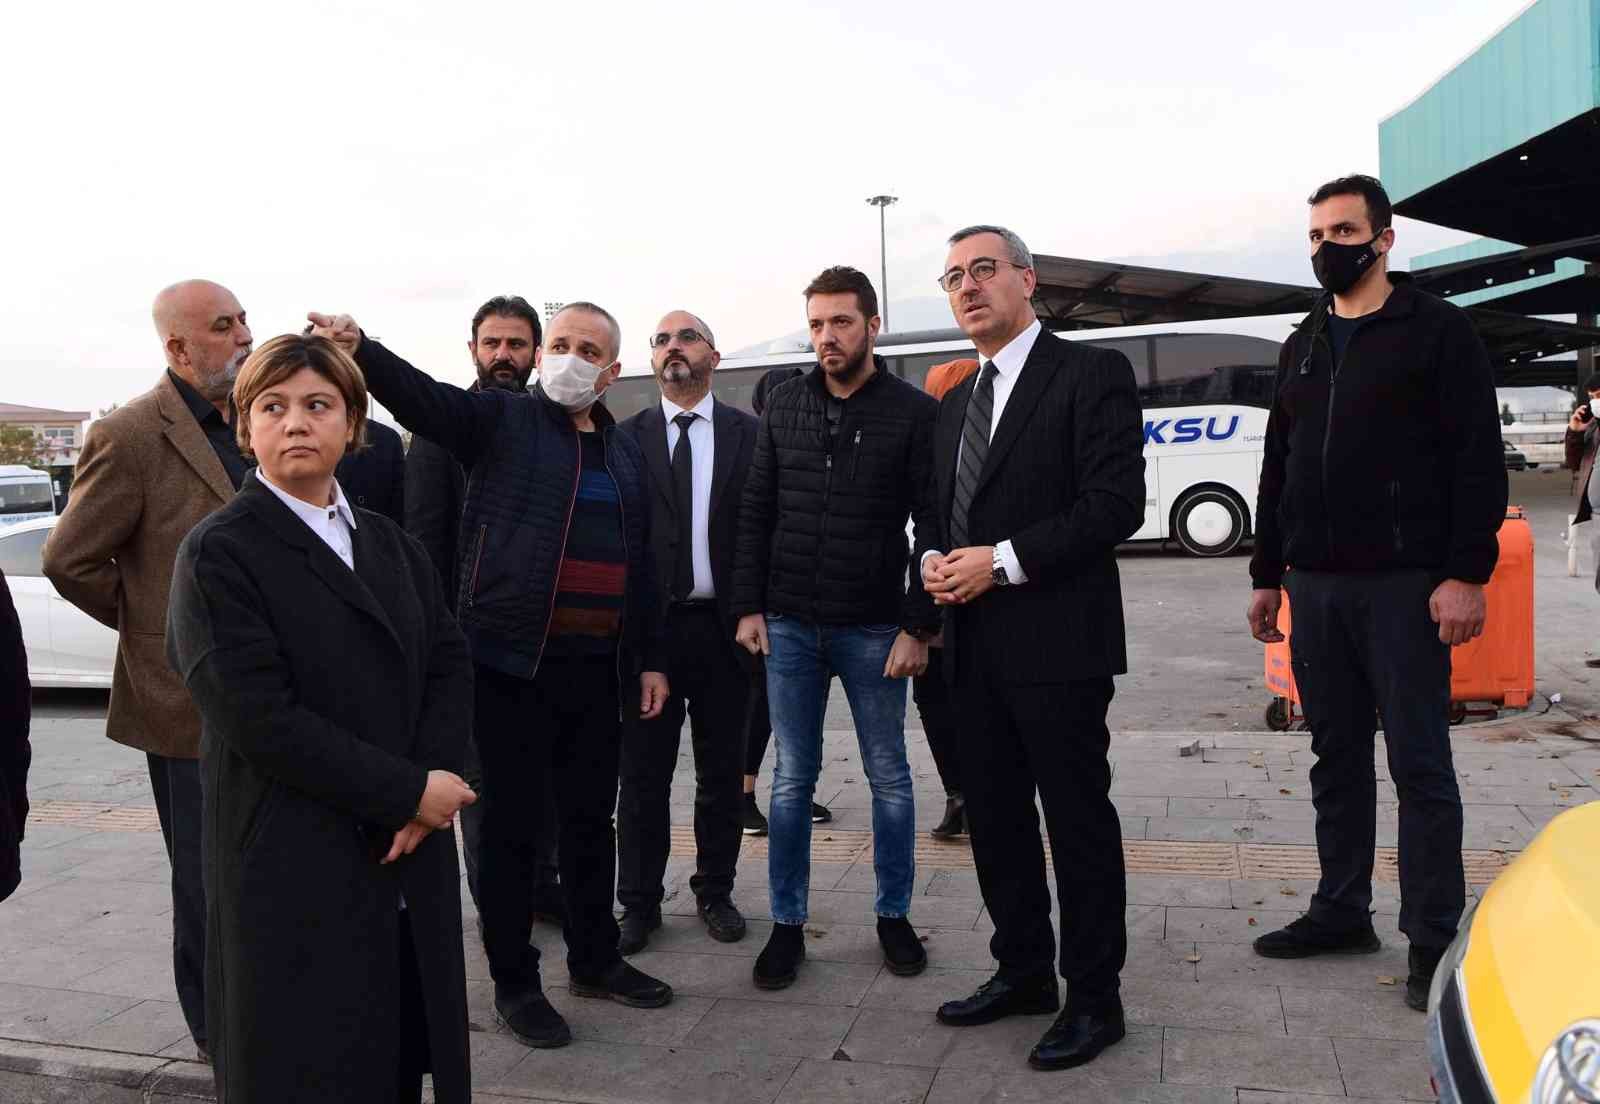 Şehirlerarası otobüs terminali hizmete açılıyor #kahramanmaras